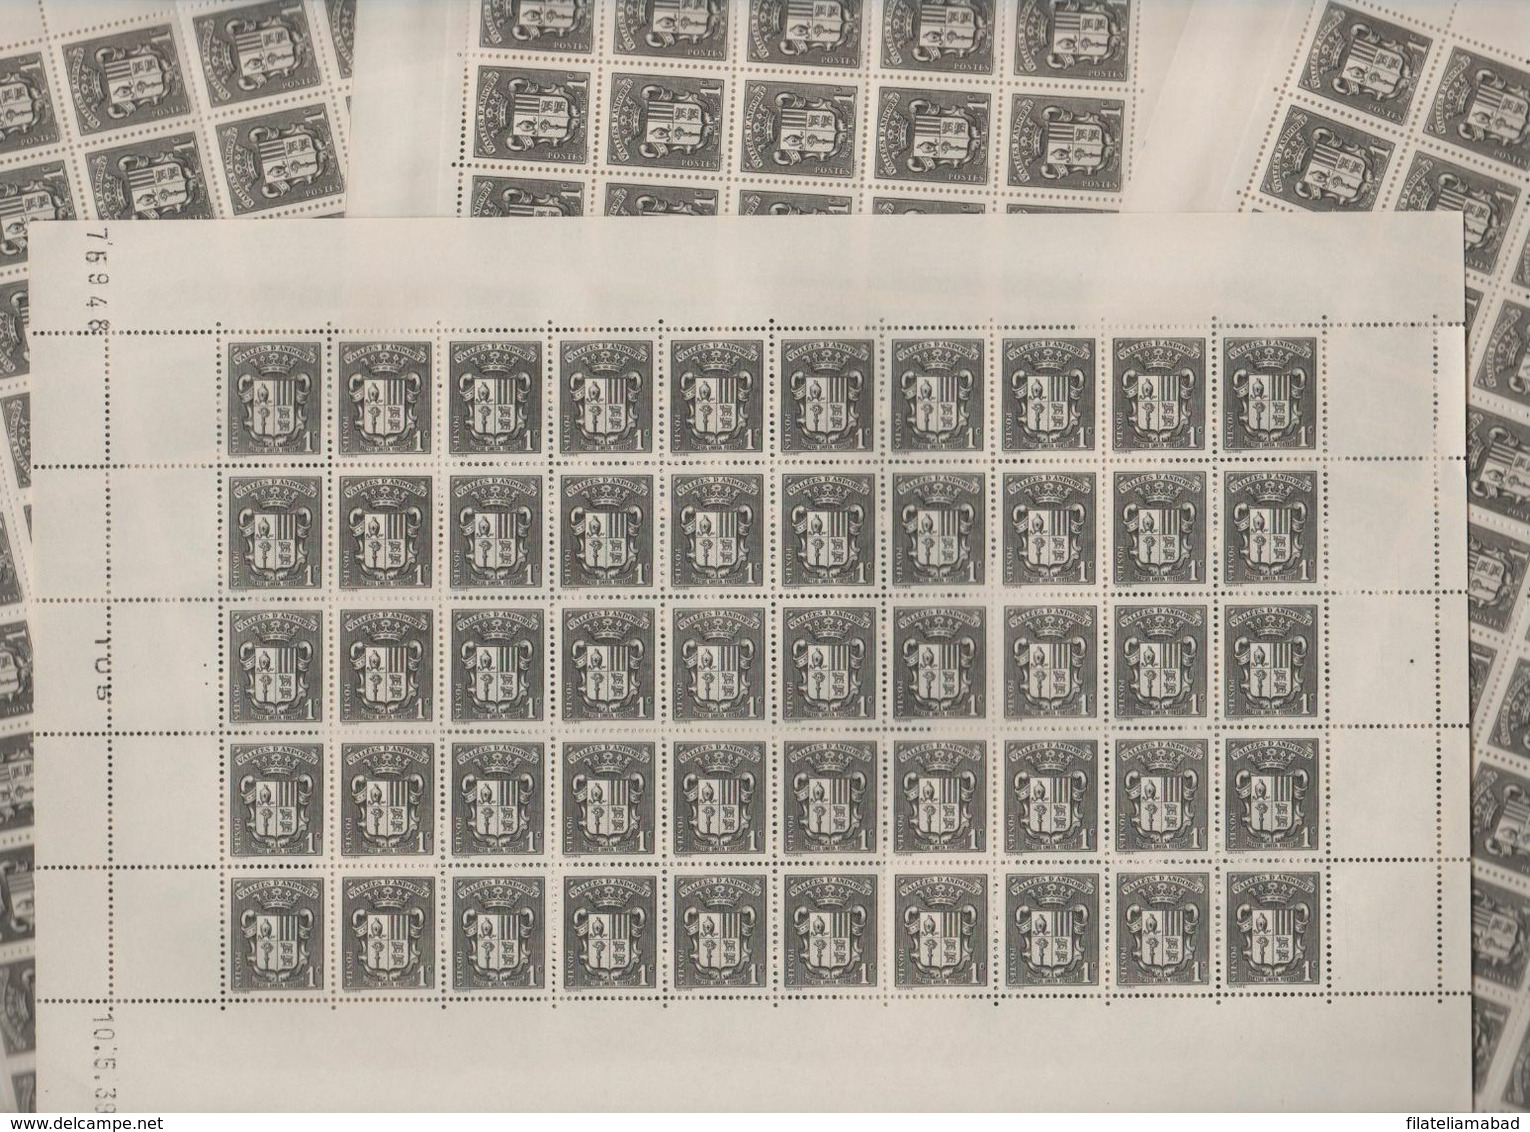 ANDORRA CORREO F..200 SELLOS Nº 47 DEL AÑO 1937-43 EN MUY NUEN ESTADO C. 100,00€  (C.H) - Blocks & Kleinbögen